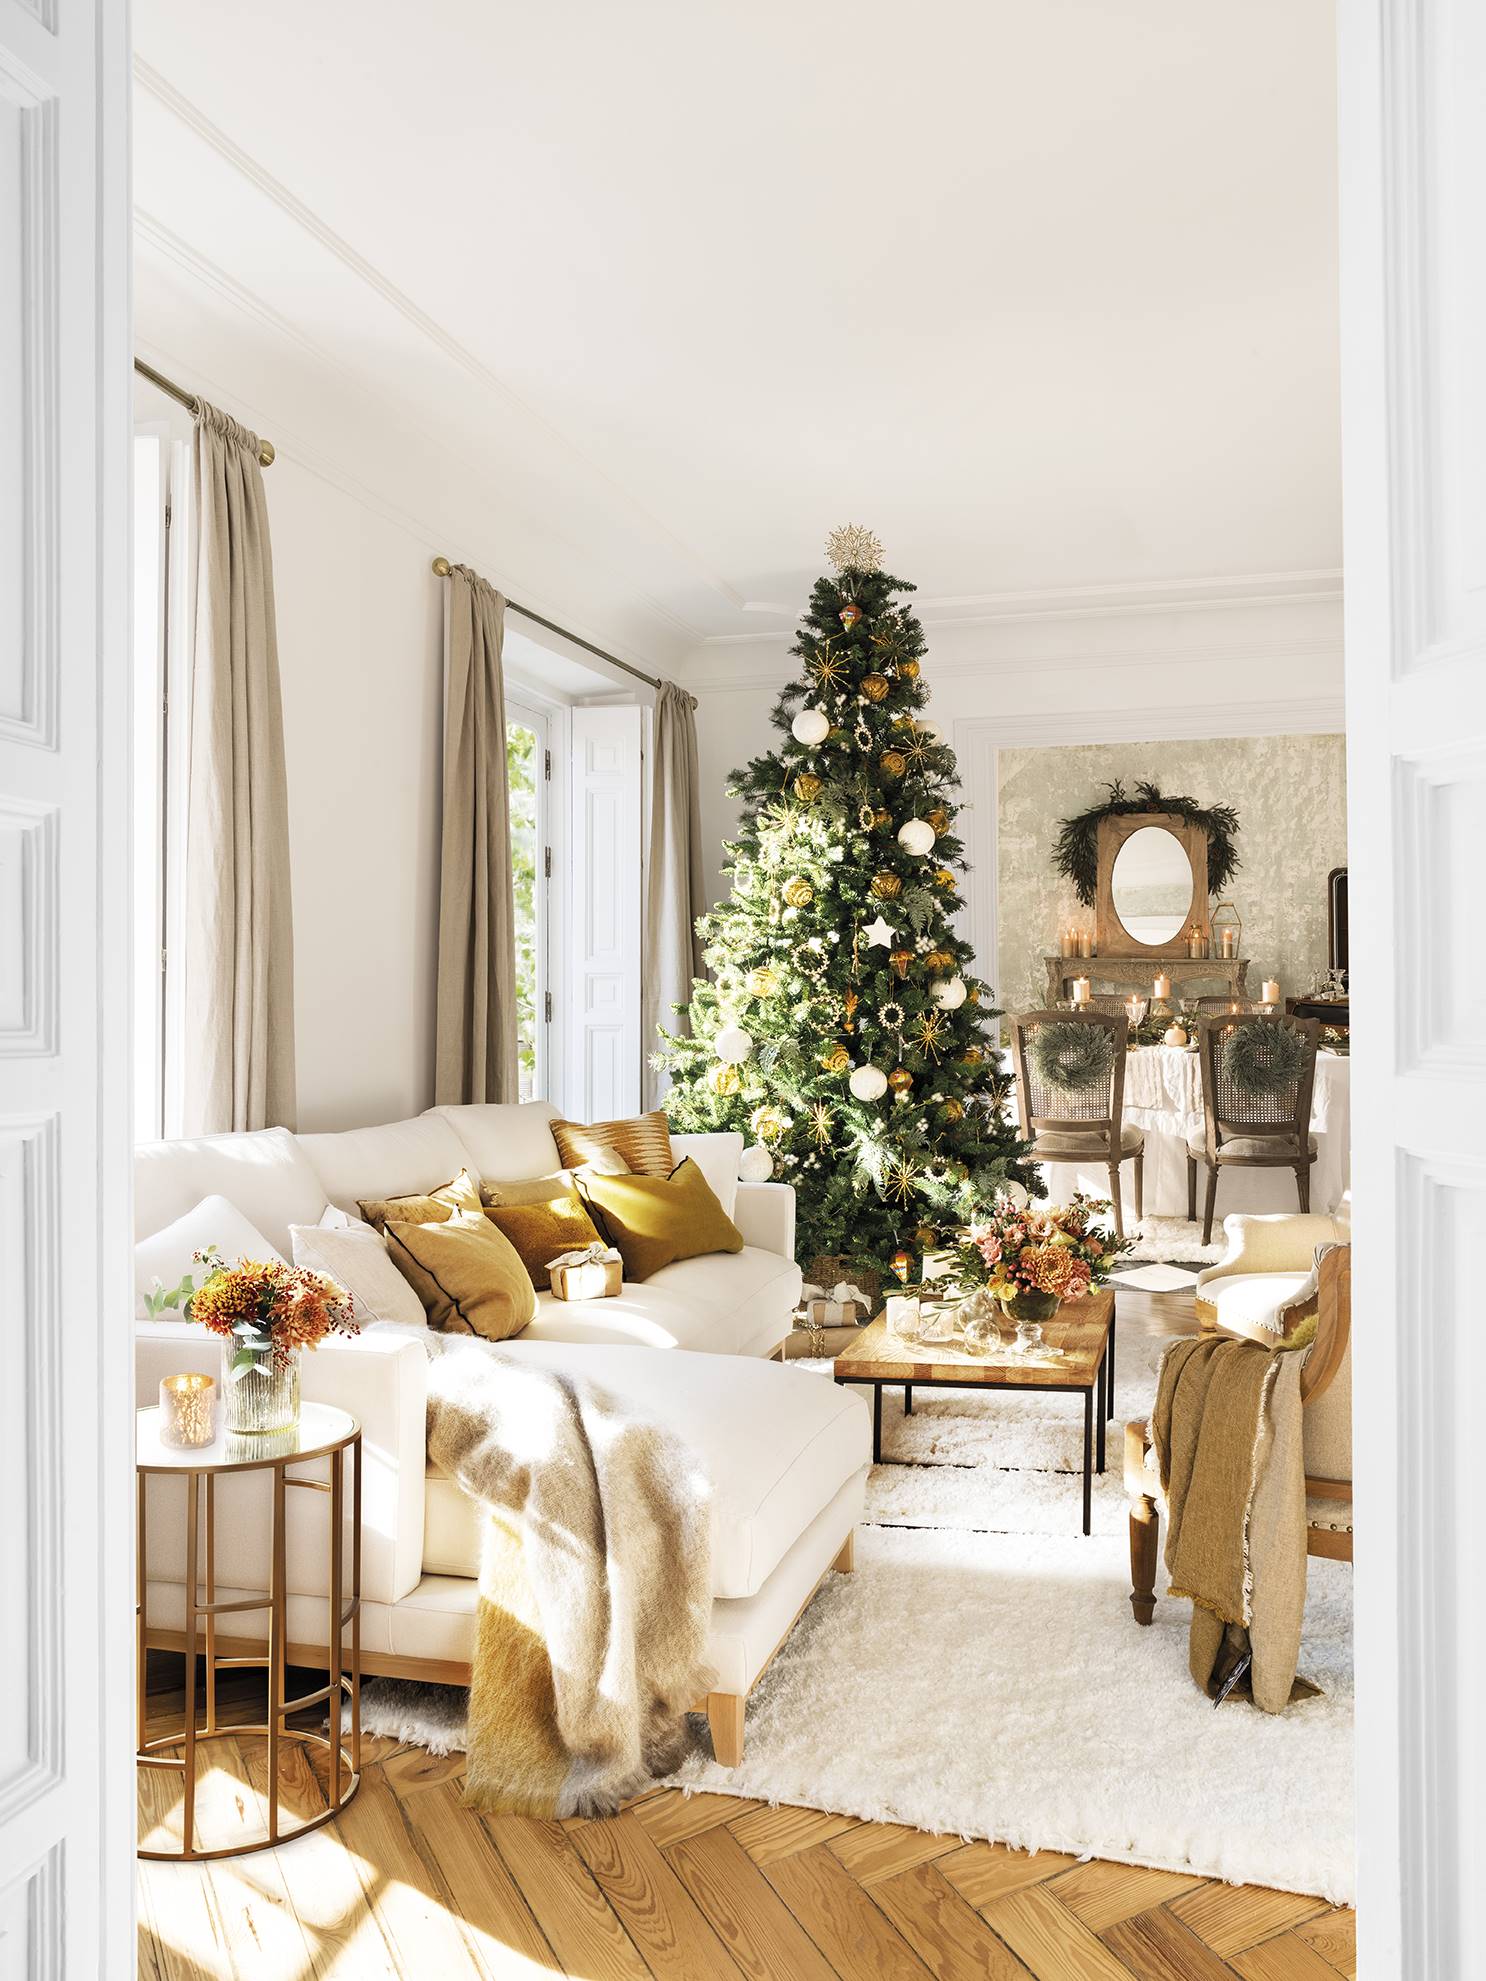 Un salón en tonos blancos y dorados muy navideño.